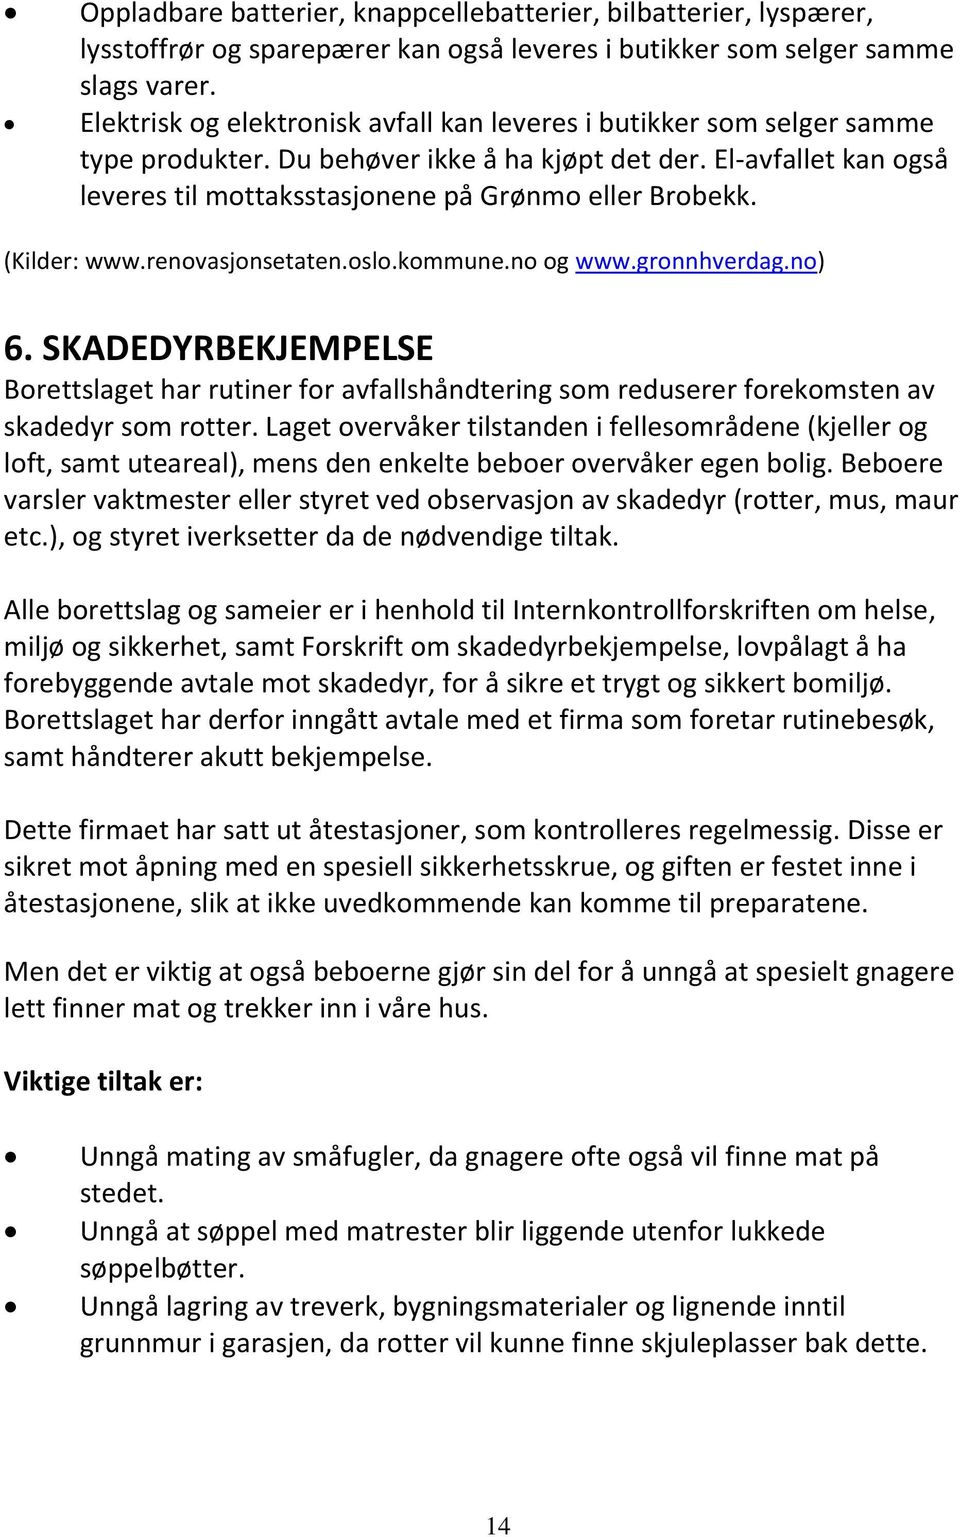 (Kilder: www.renovasjonsetaten.oslo.kommune.no og www.gronnhverdag.no) 6. SKADEDYRBEKJEMPELSE Borettslaget har rutiner for avfallshåndtering som reduserer forekomsten av skadedyr som rotter.